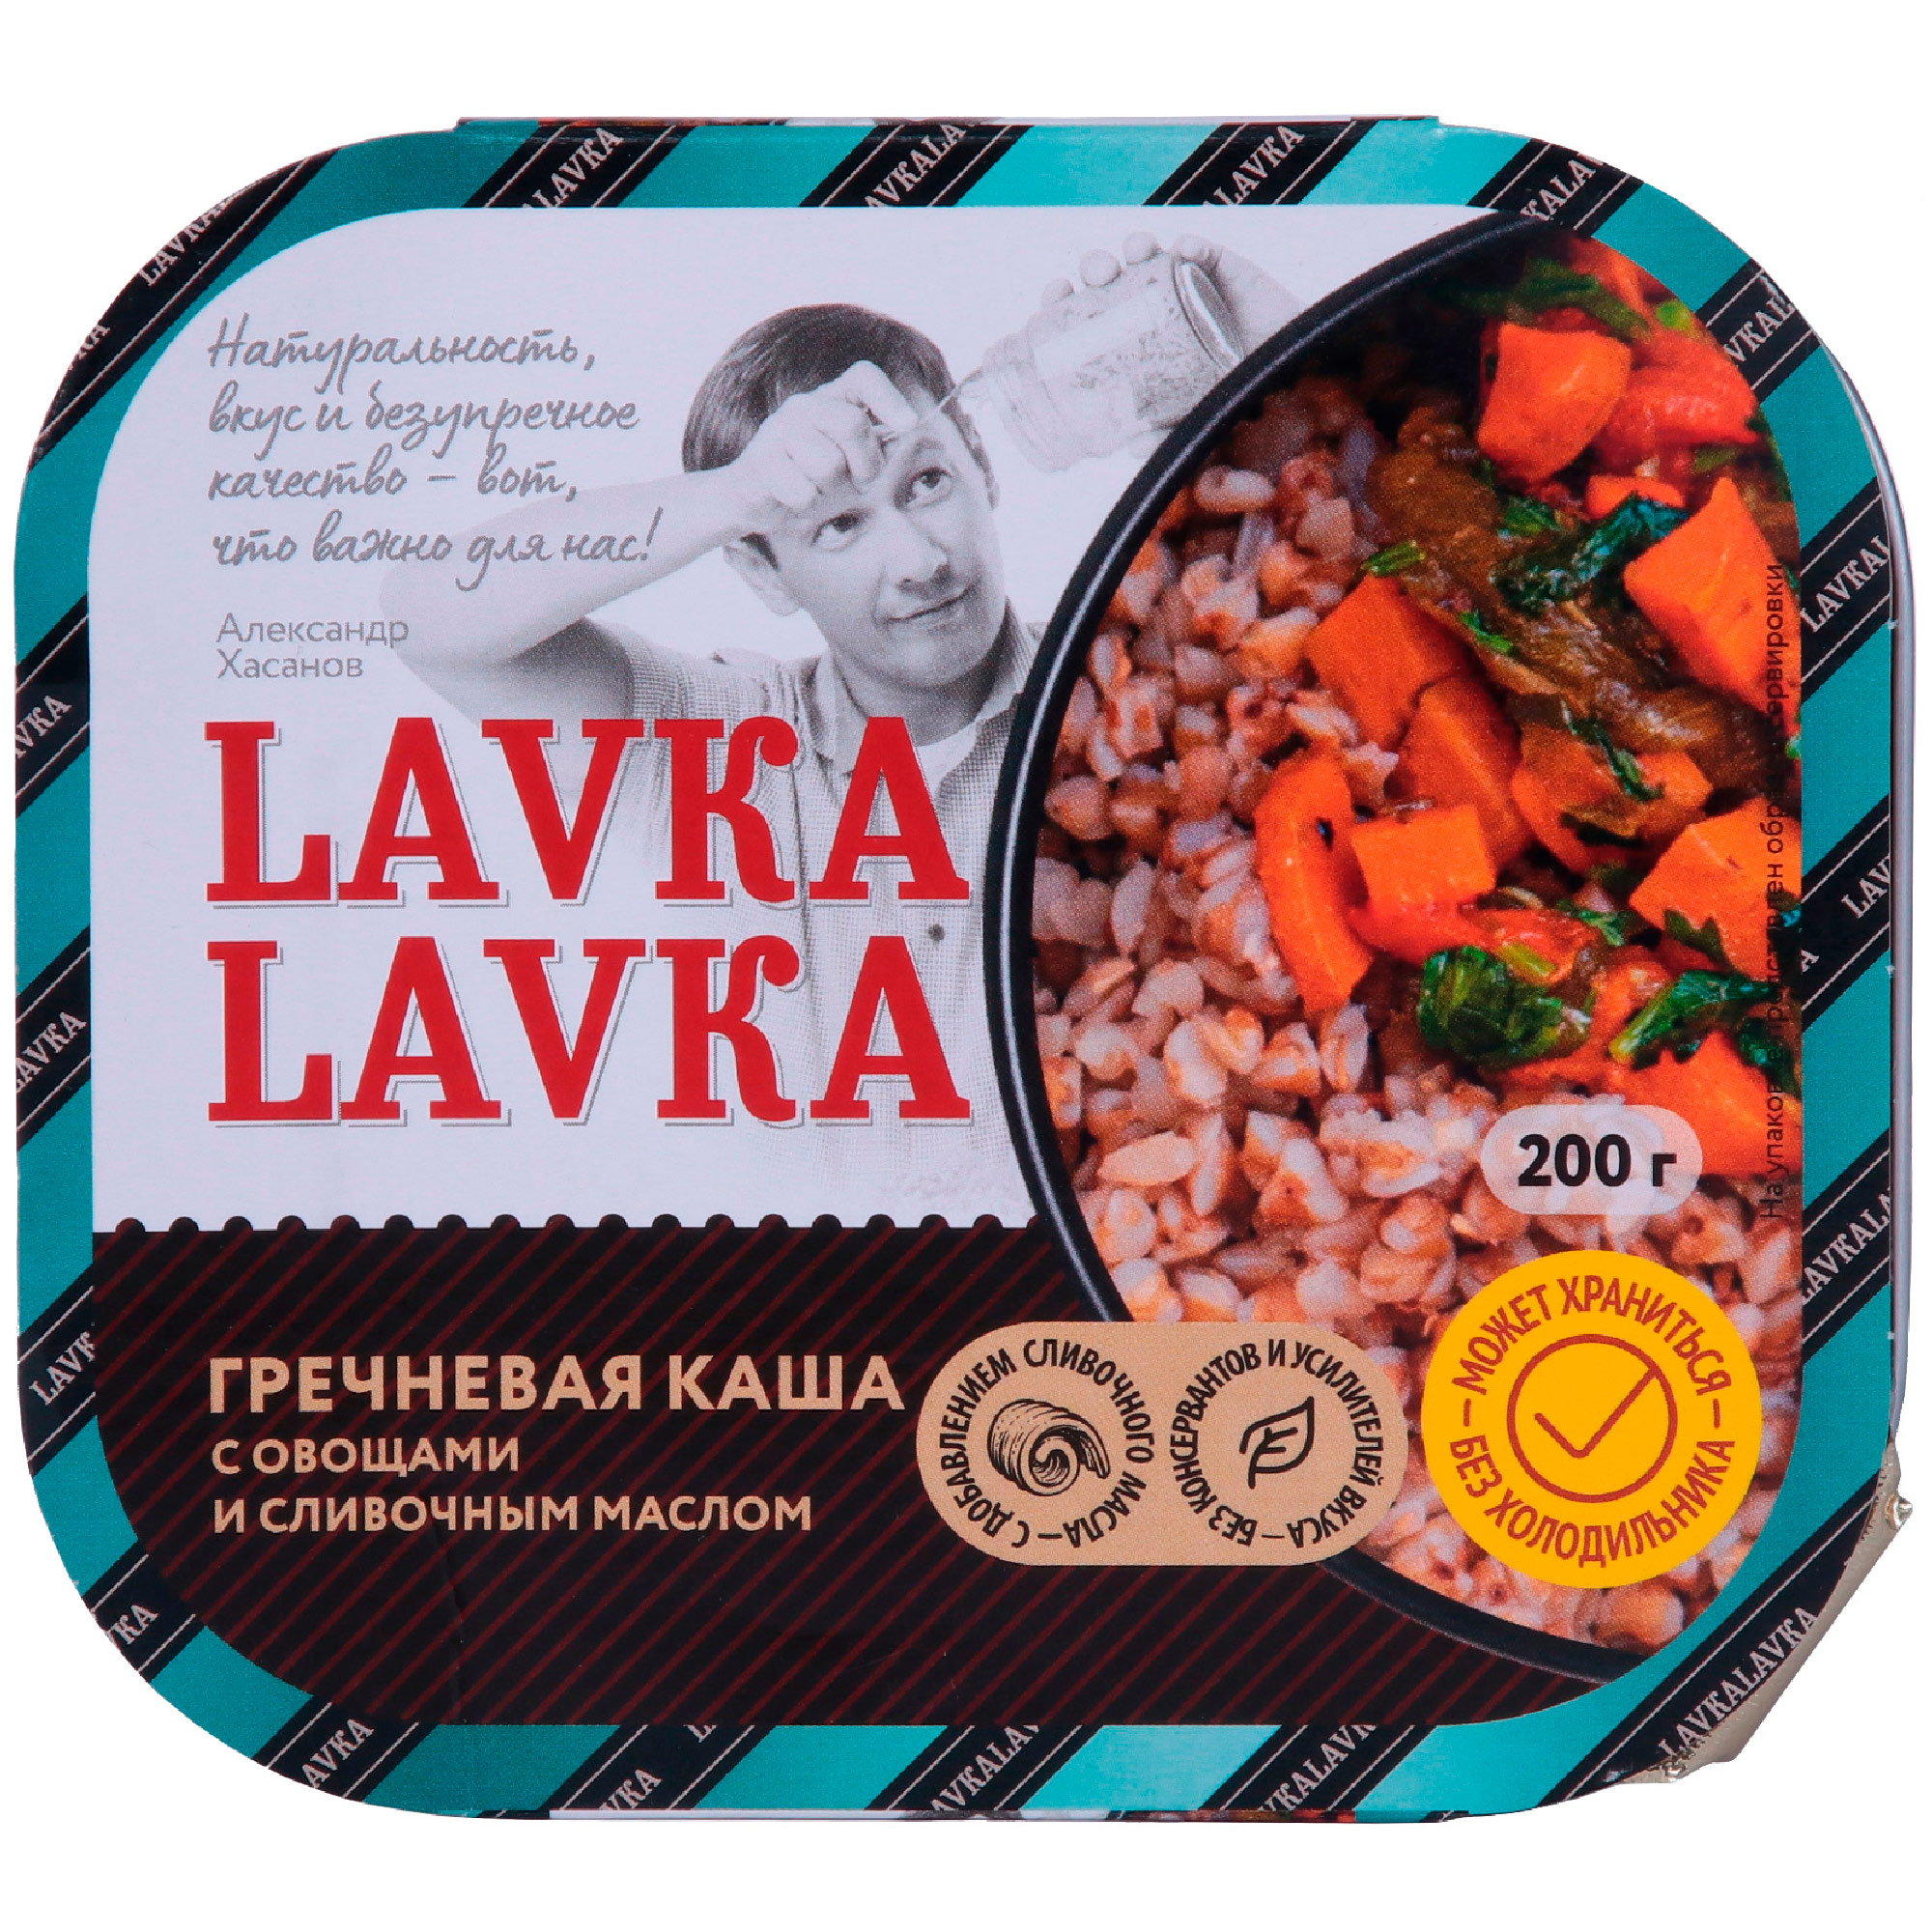 Каша гречневая LavkaLavka с овощами и сливочным маслом, 200 г крупа гречневая националь 900 гр